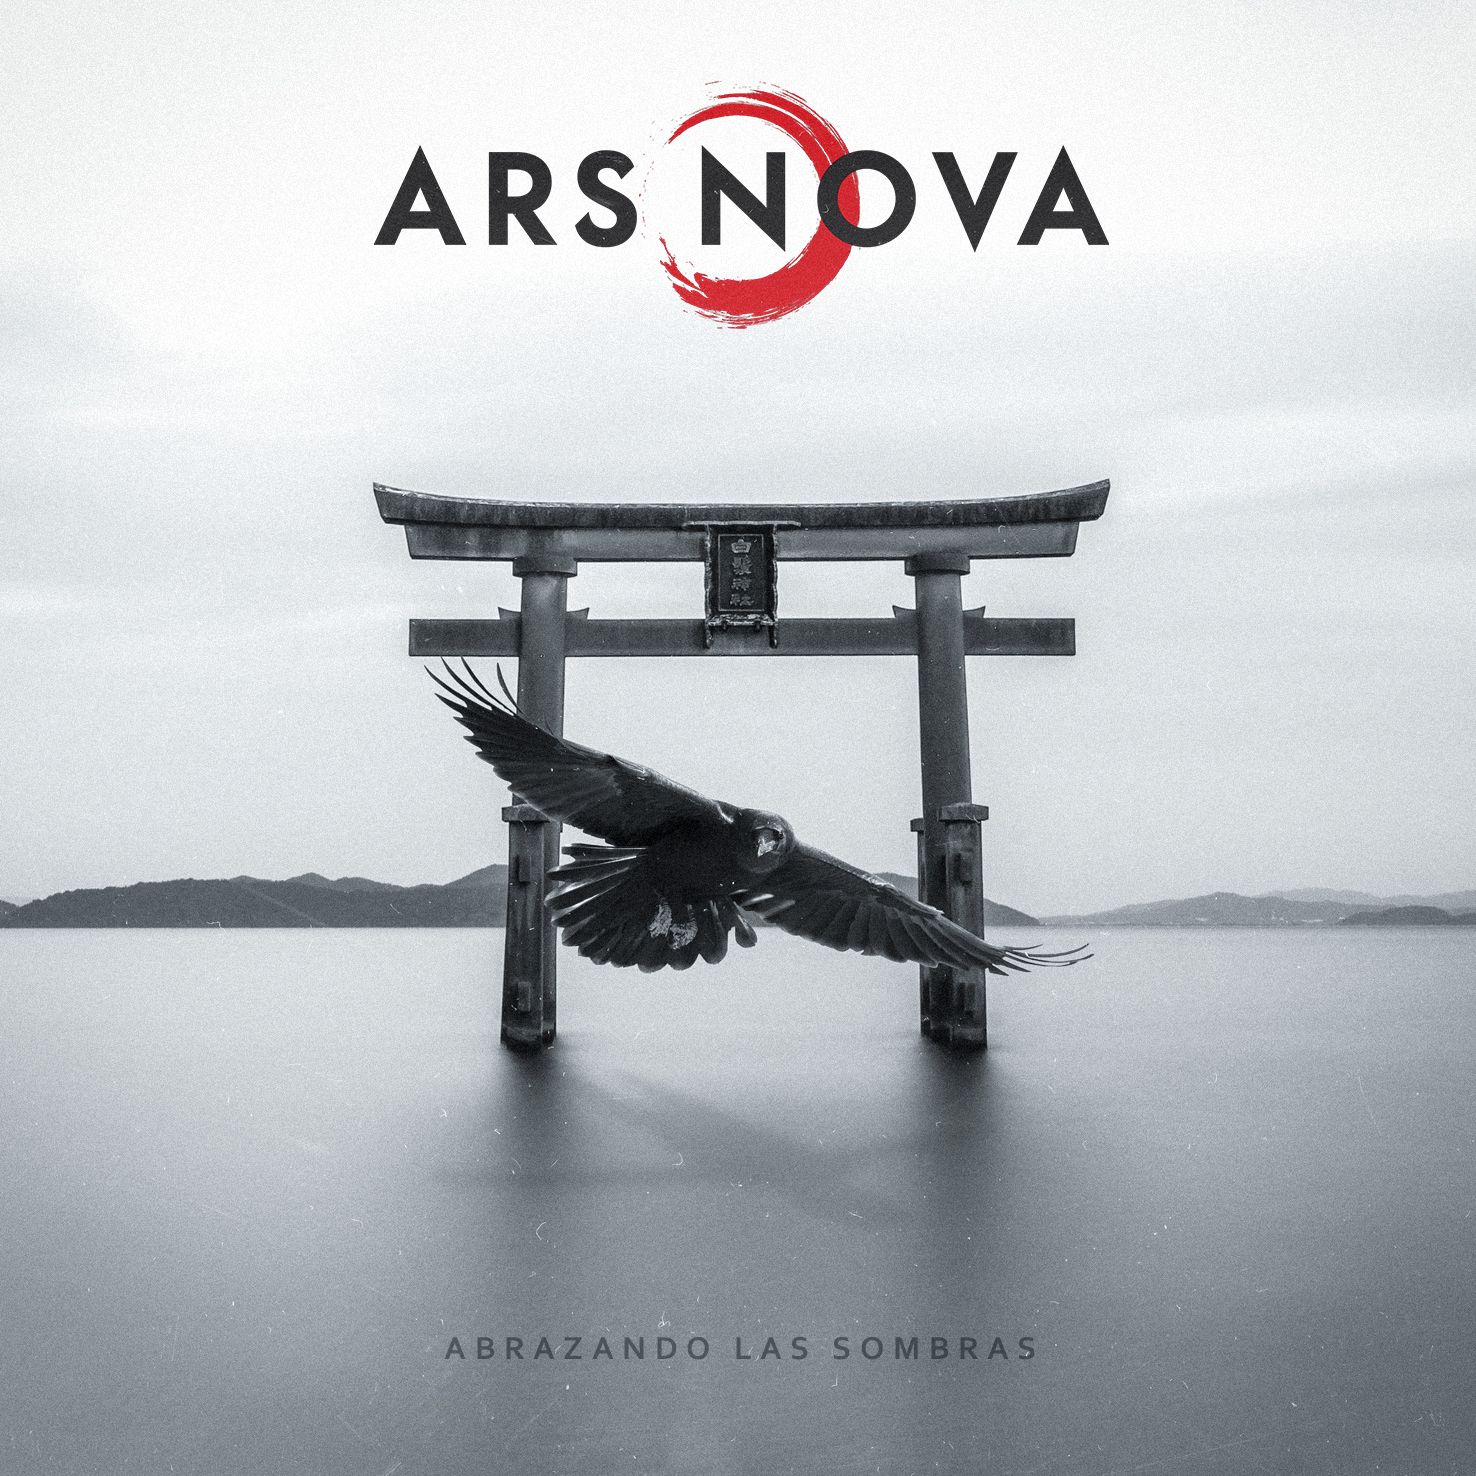 [Reseña] A la tercera va la vencida, Ars Nova se sale con su nuevo disco “Abrazando a las sombras”